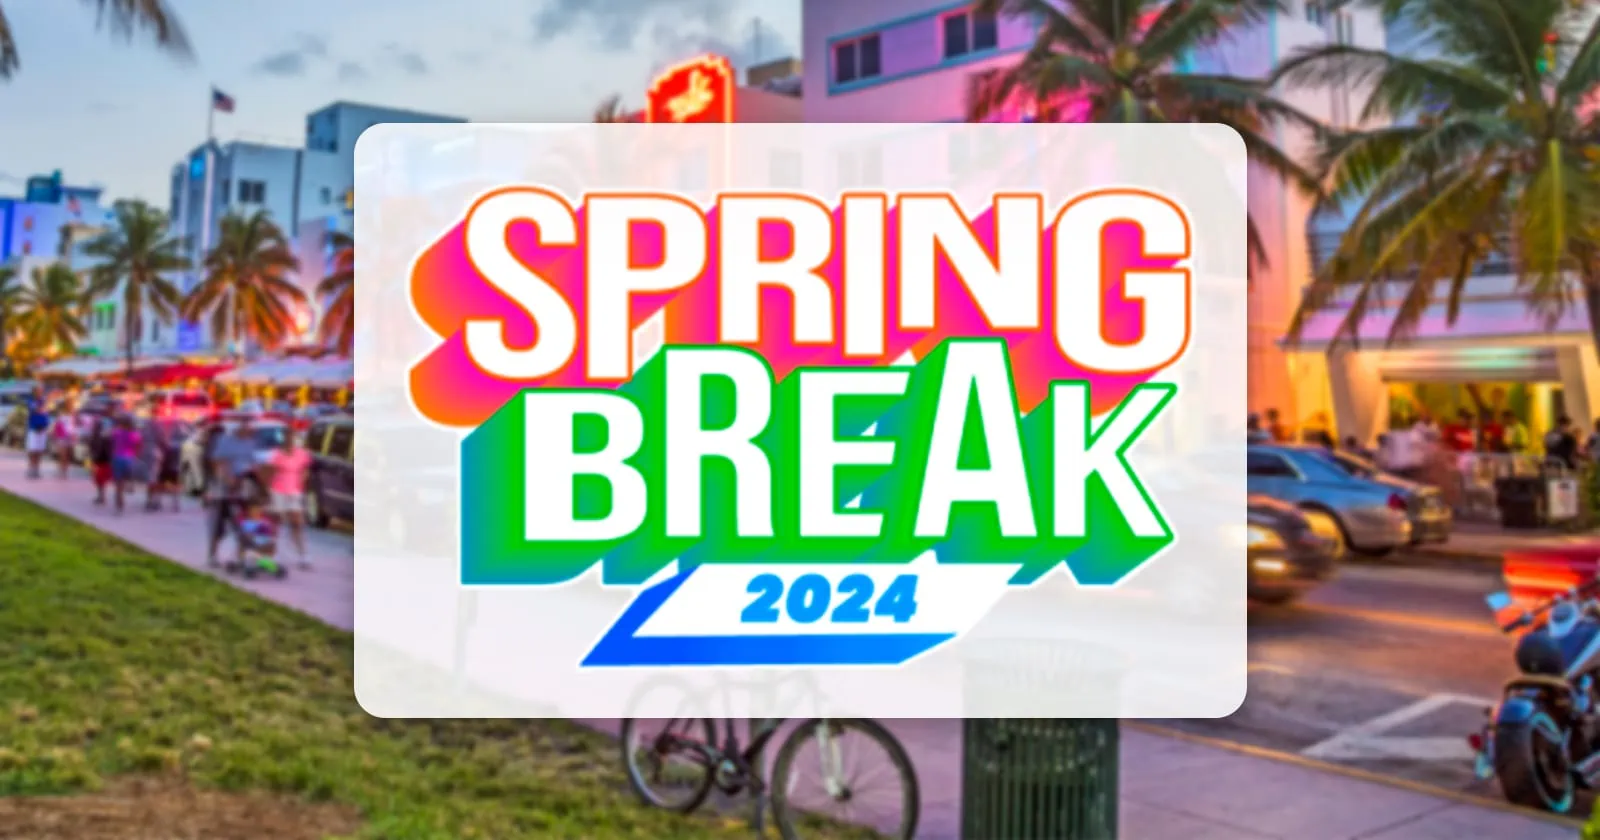 ¿Listo Para el Spring Break 2024 en Miami?: Conoce Antes las Restricciones Informadas por la Ciudad